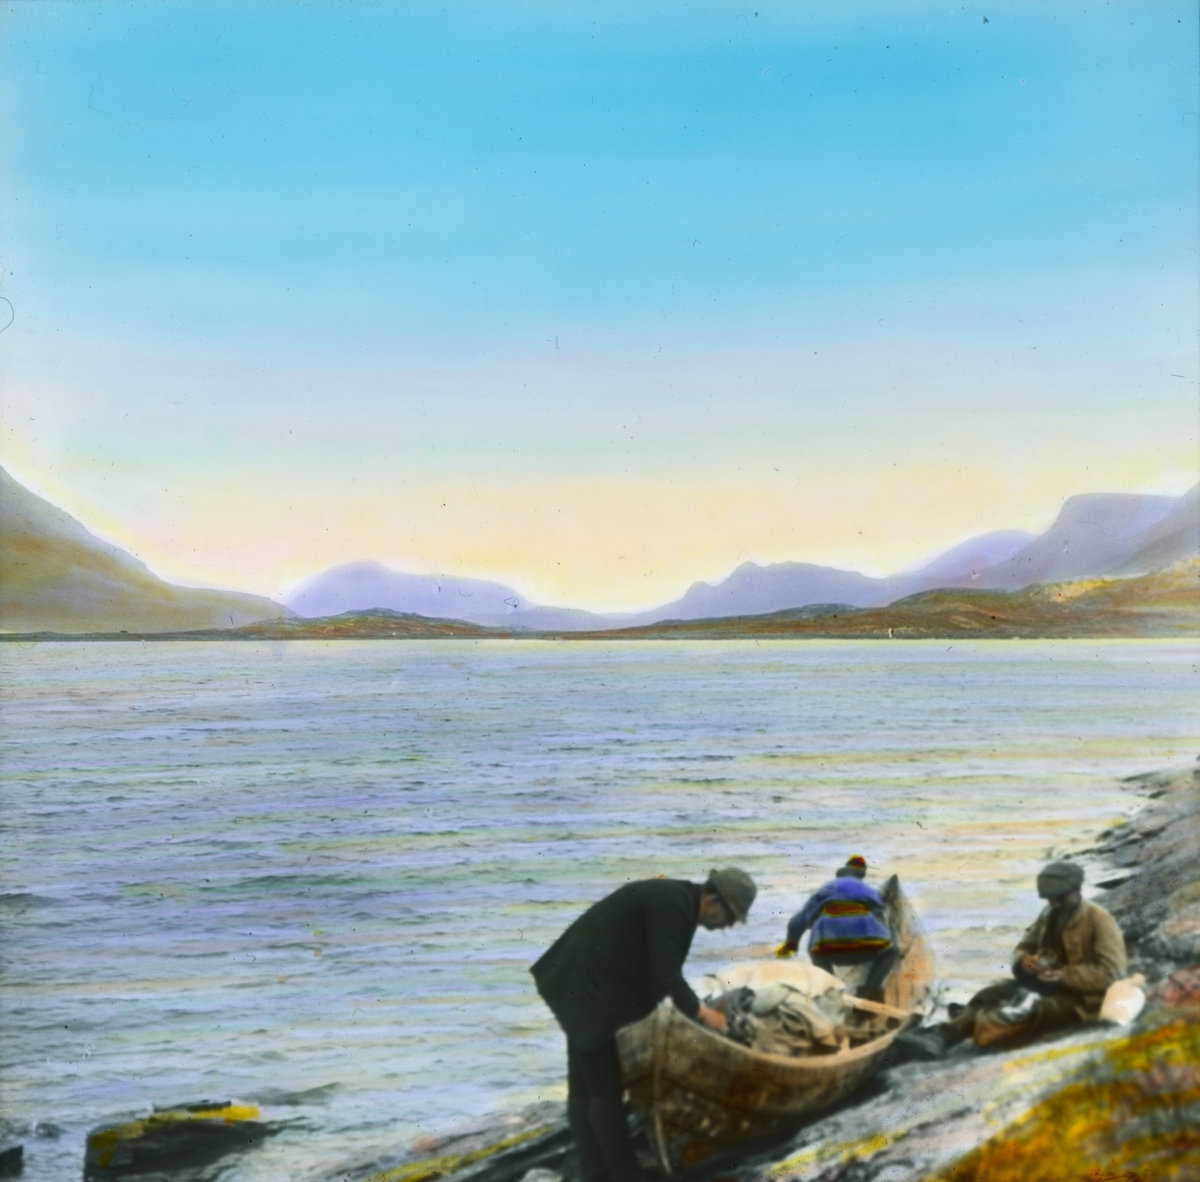 Håndkolorert dias. Tre menn ved en robåt i vannkanten. Den ene av mennene bærer samekofte og lue. I bakgrunnen ses fjell.